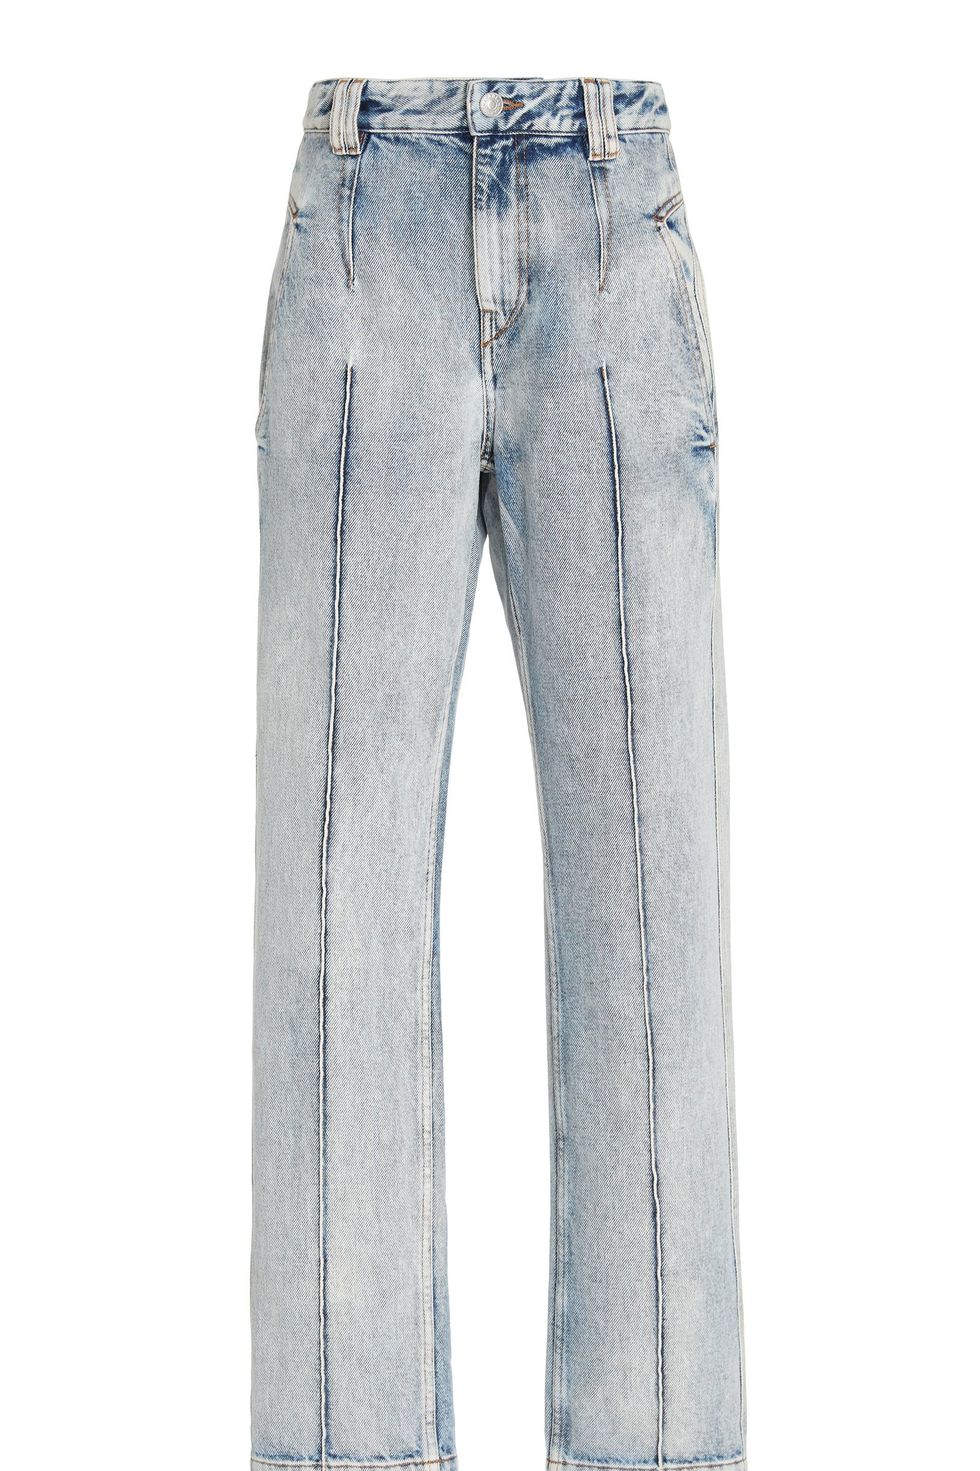 Best '90s Jeans for Spring - '90s-Inspired Denim Styles 2023